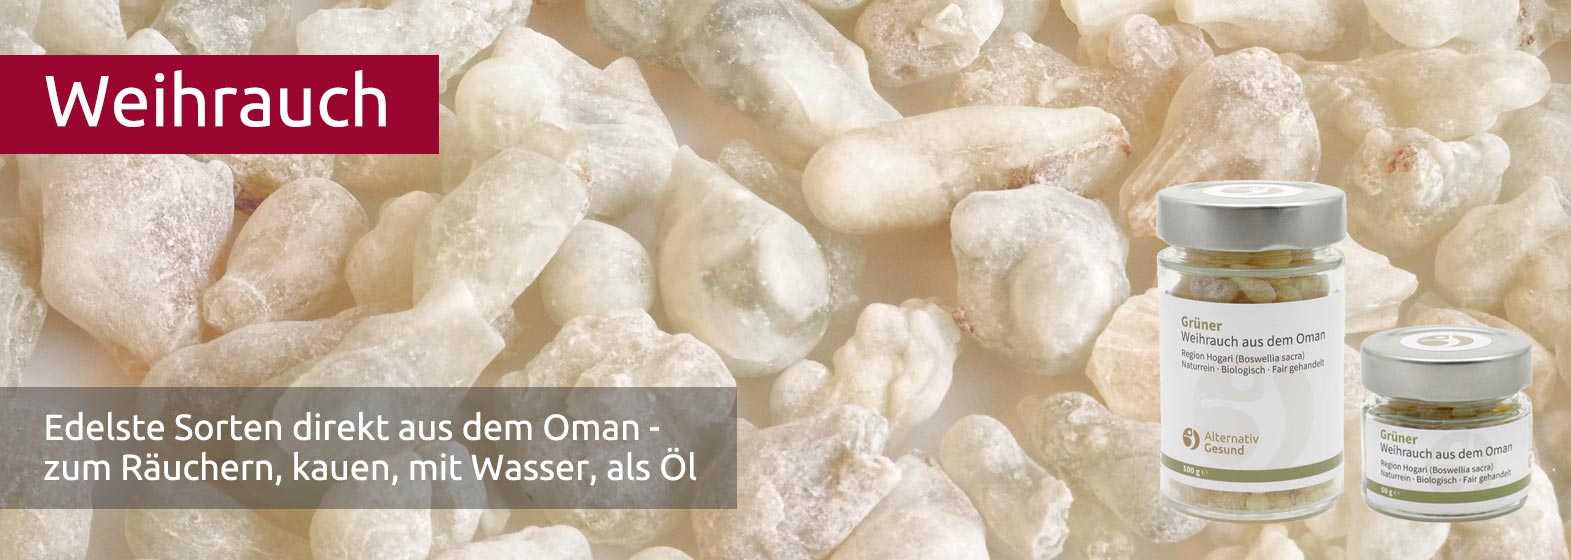 Nahaufnahme von den Harzkugeln des Weihrauchs aus dem Oman